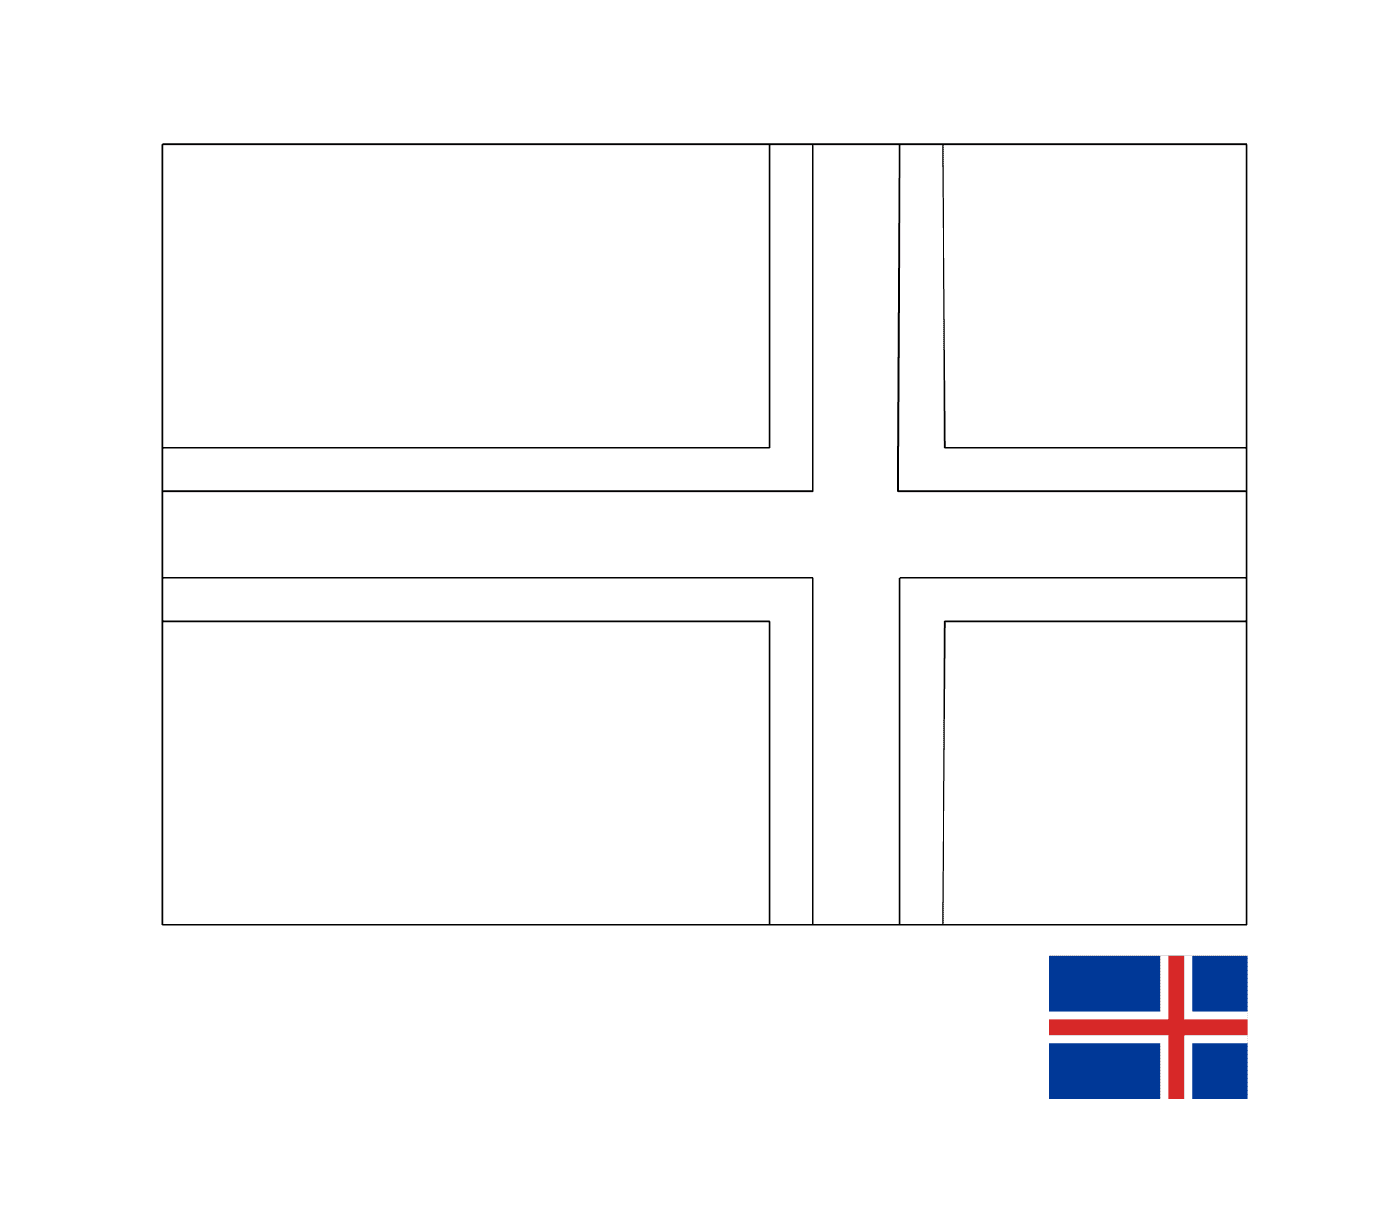  عَلَم أيسلندا 